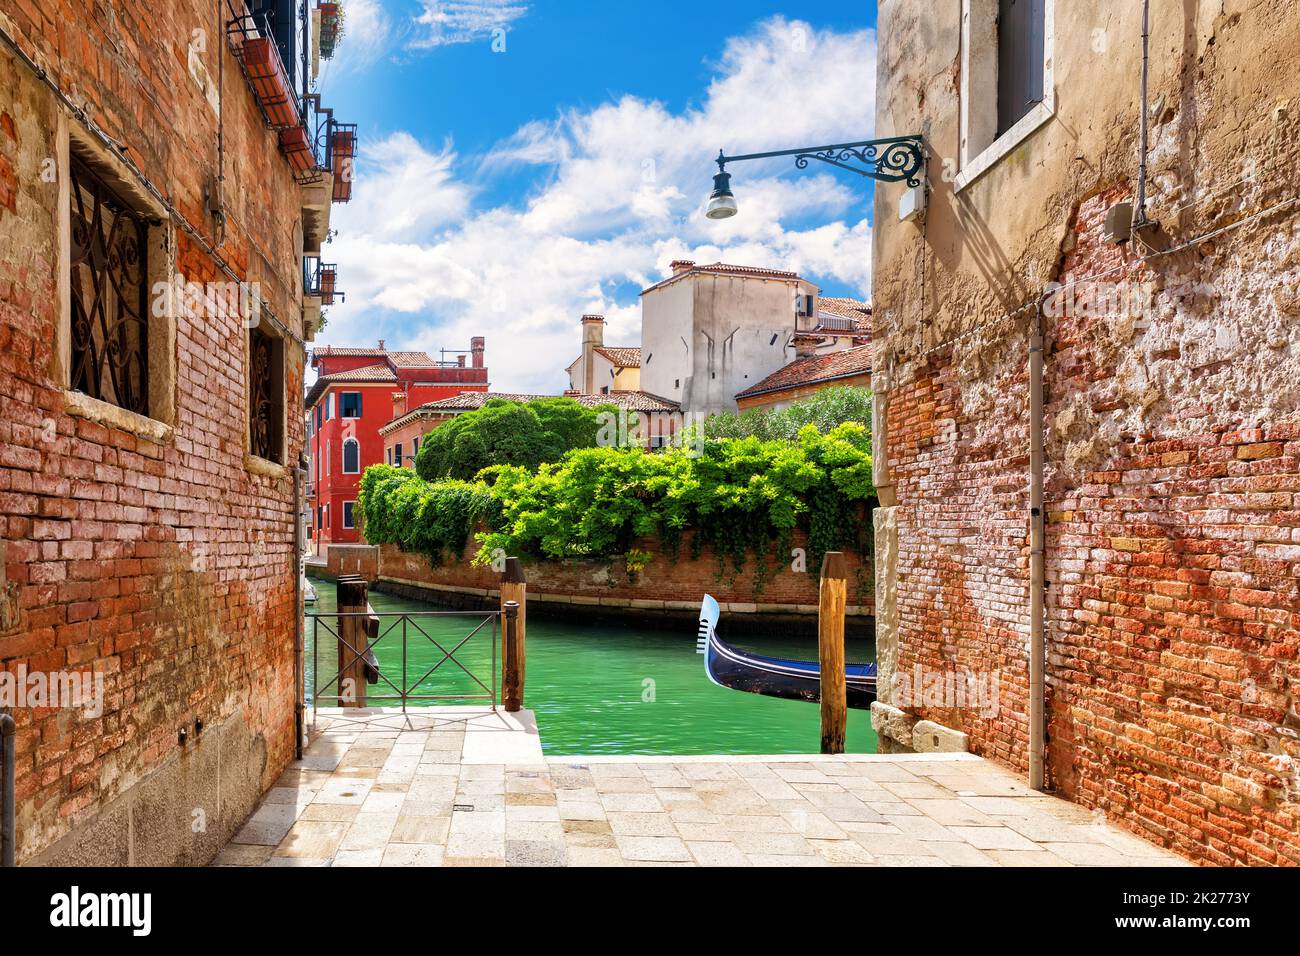 Typical narrow Italian street near the canal of Venice Stock Photo